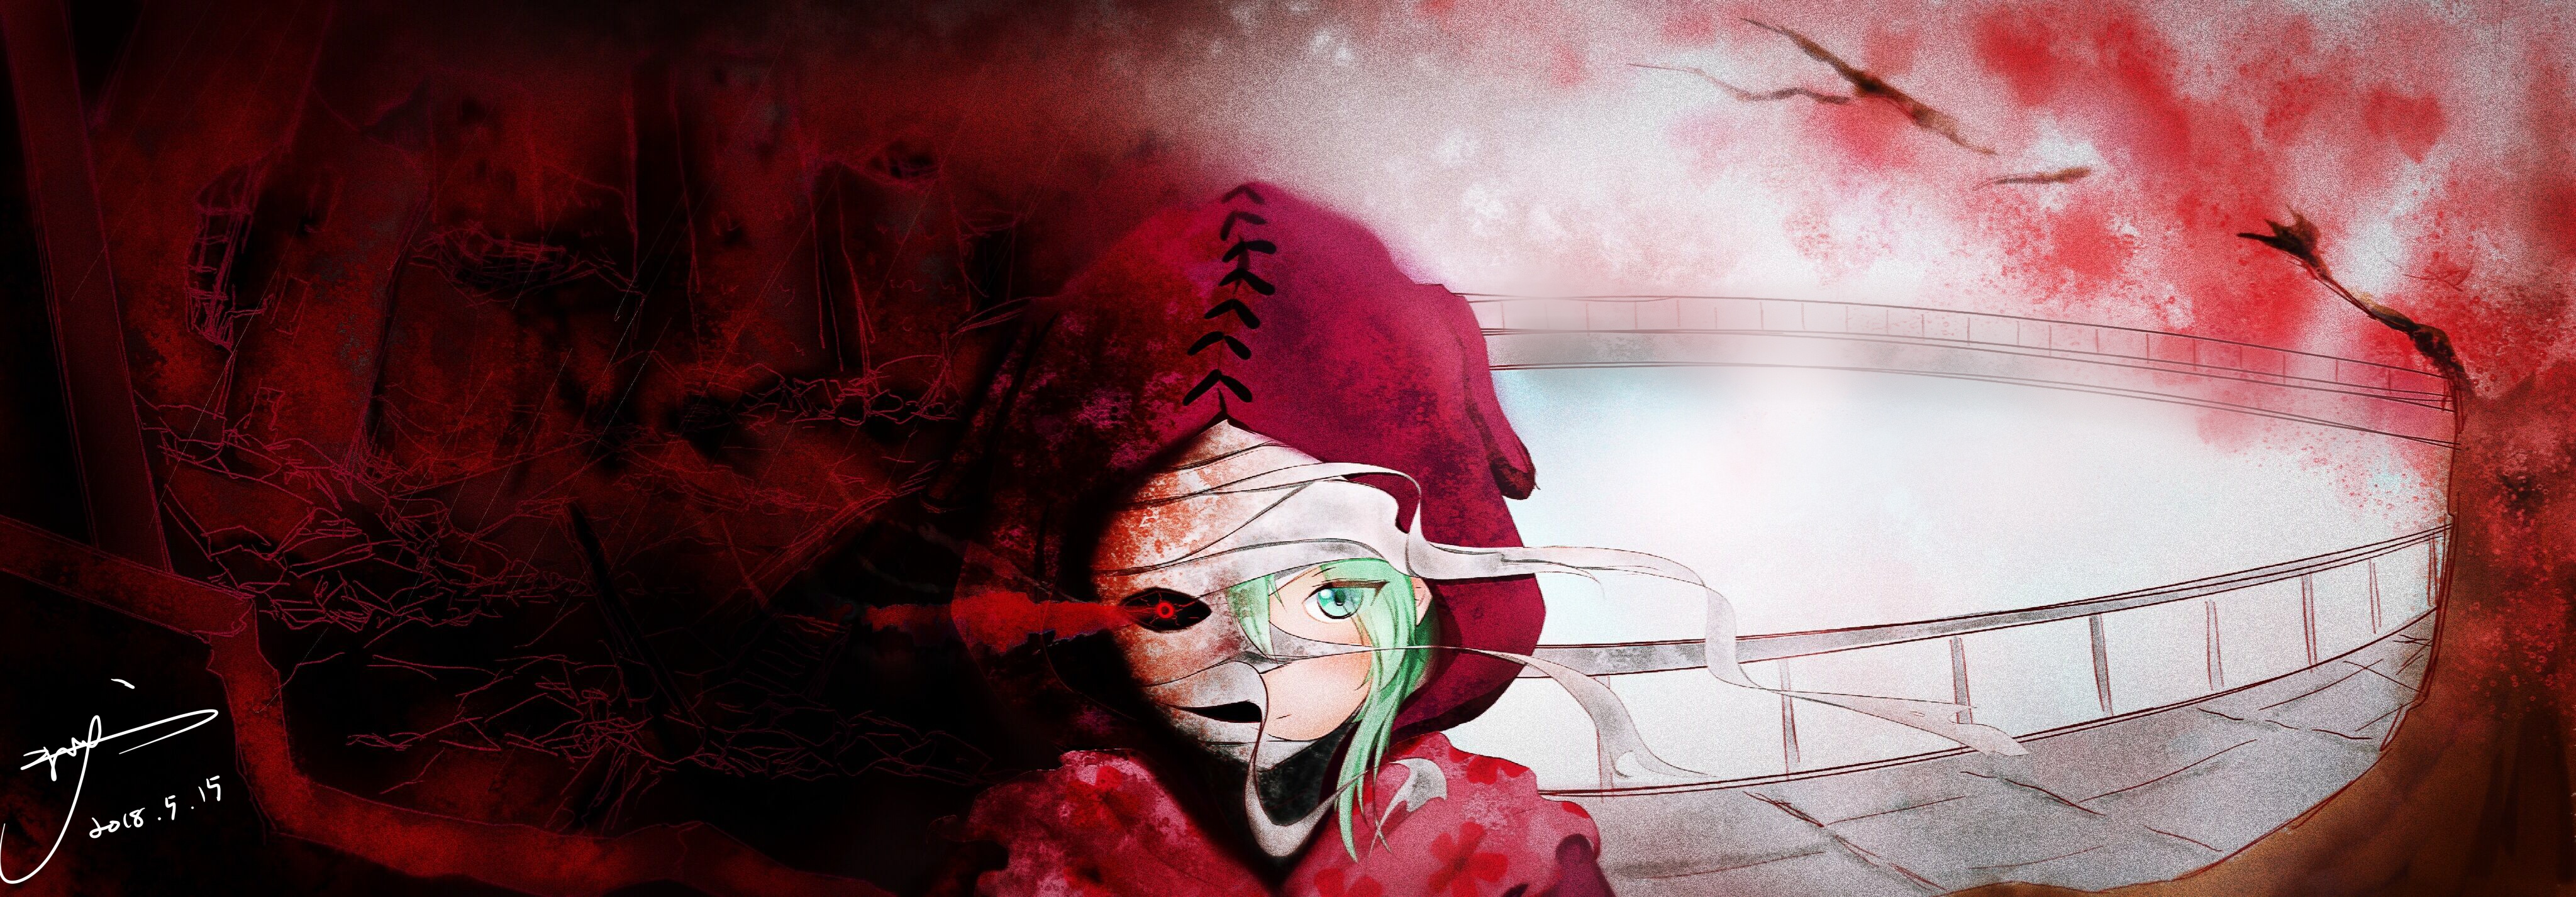 eto yoshimura, anime, tokyo ghoul:re, bandage, blue eyes, green hair, red eyes, tokyo ghoul